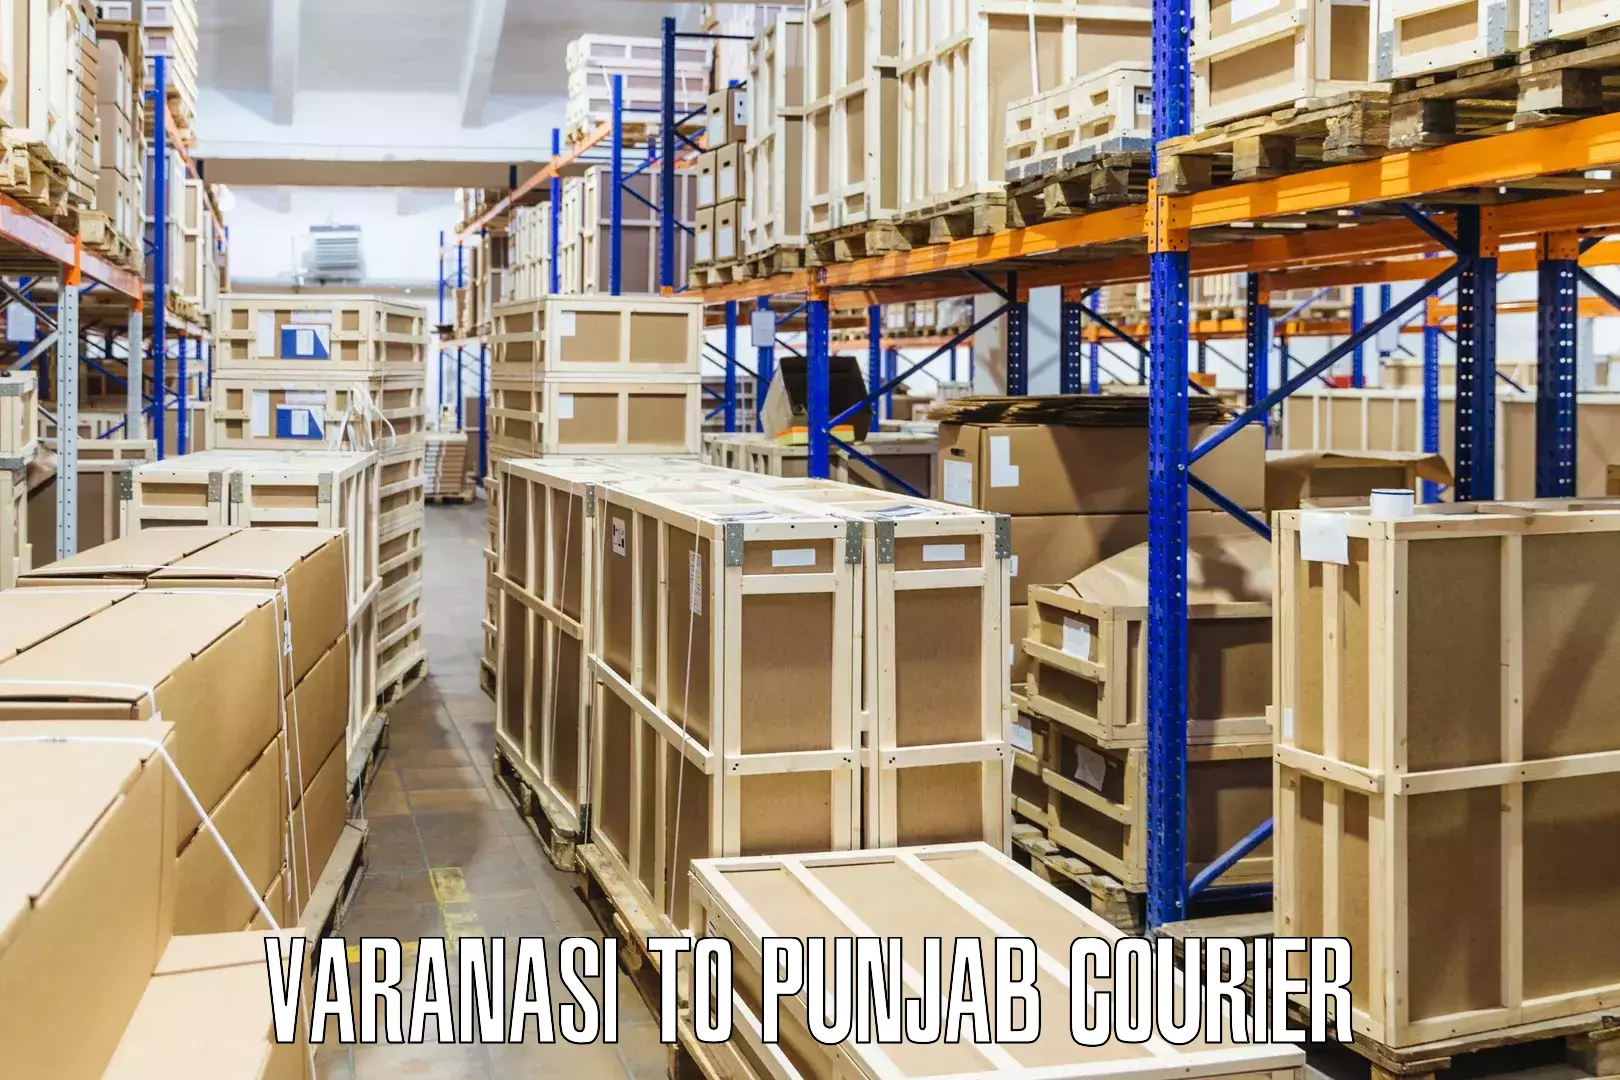 Pharmaceutical courier Varanasi to Talwara